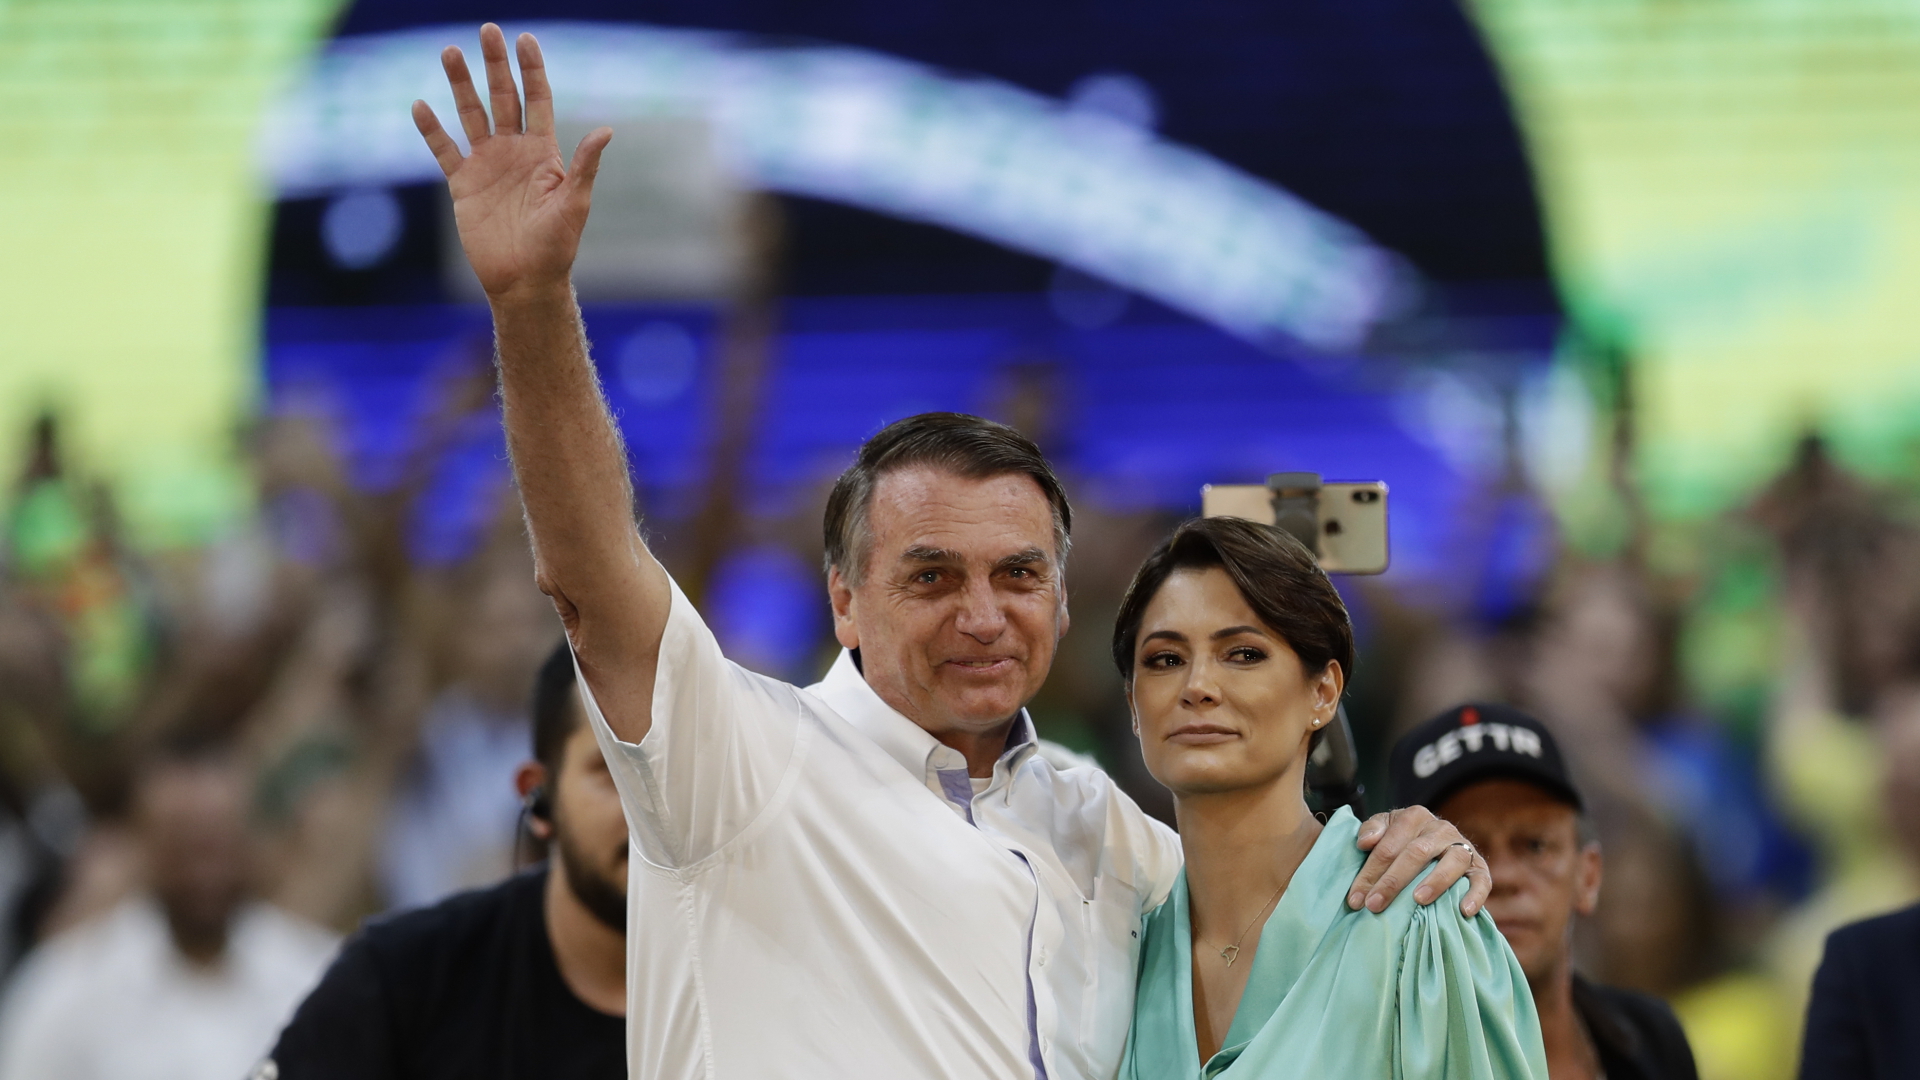 Bolsonaro mit seiner Ehefrau nach seiner Nominierung zum Präsidentschaftskandidaten | dpa